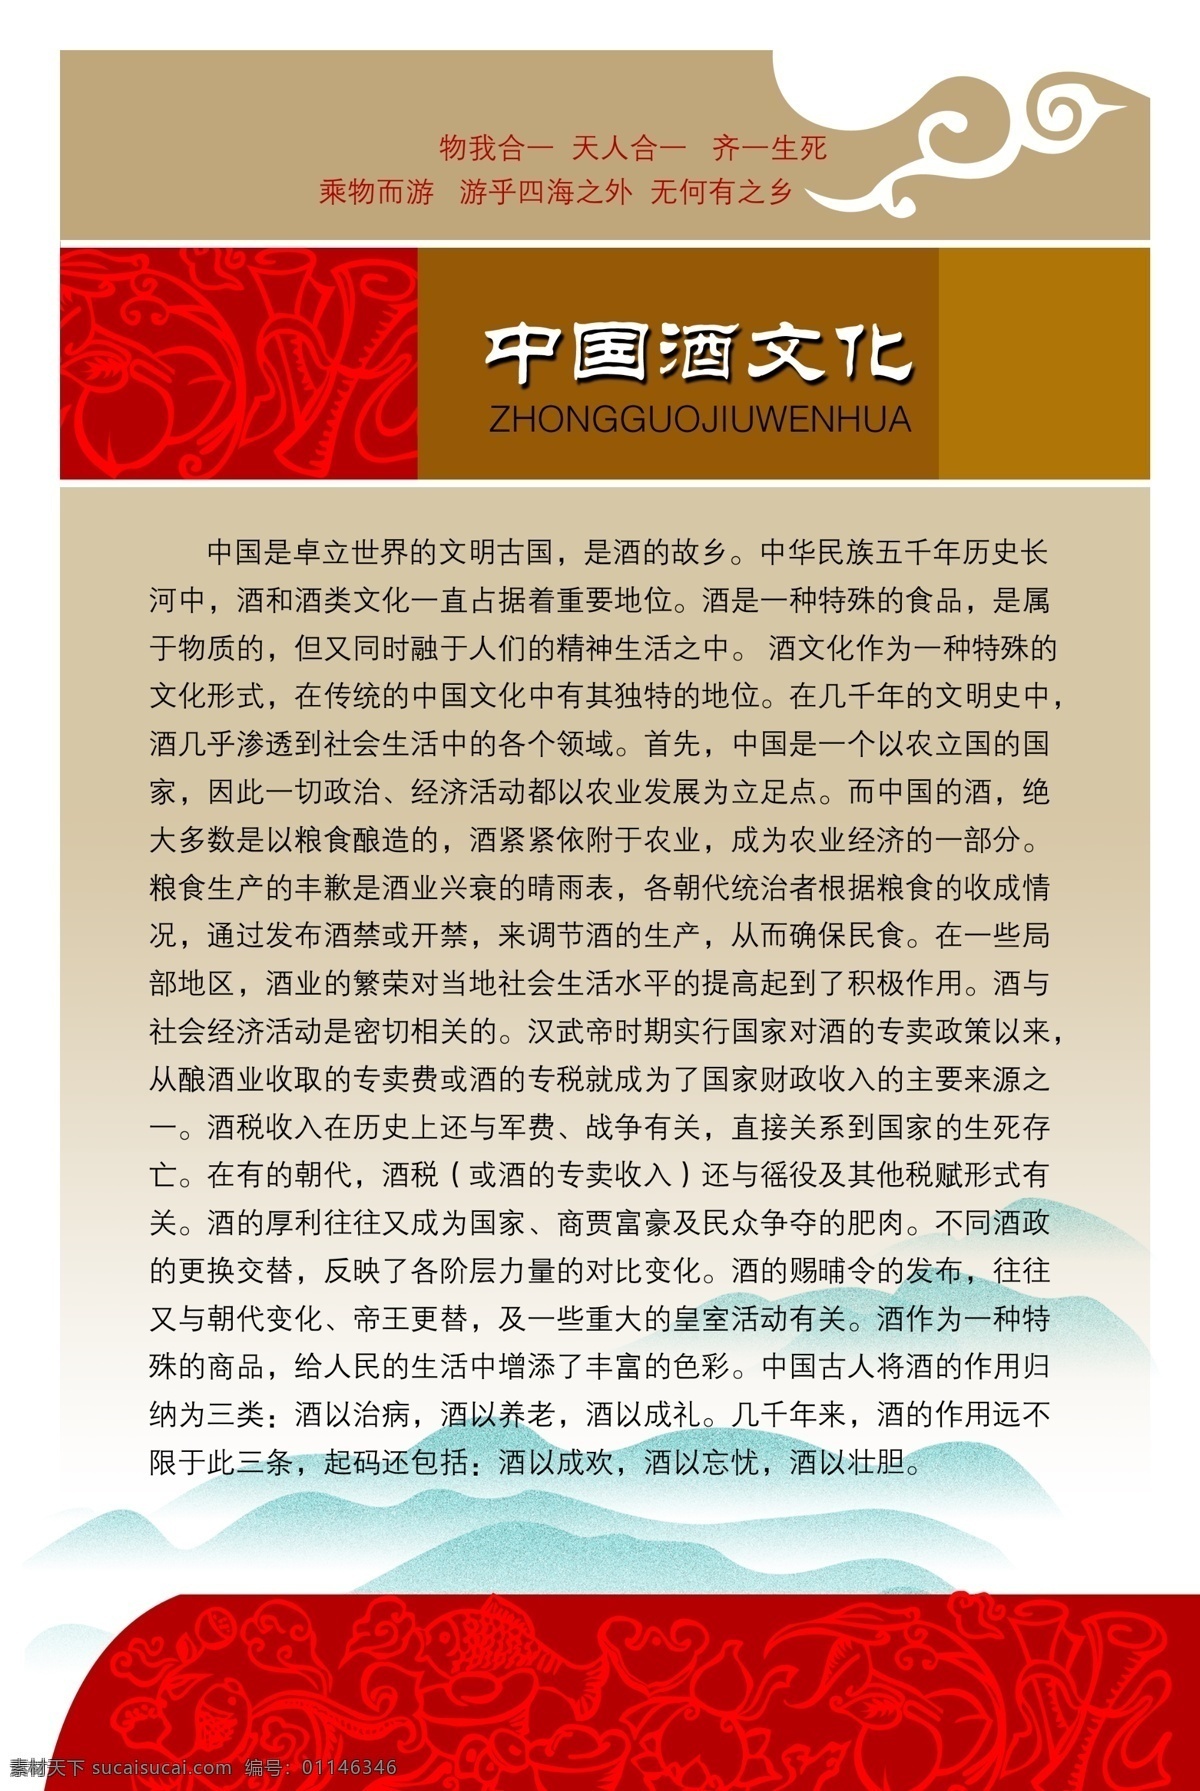 中国文化 中国风展板 古典展板 复古展板 展板素材 展板设计 山水展板 展板模板 白色